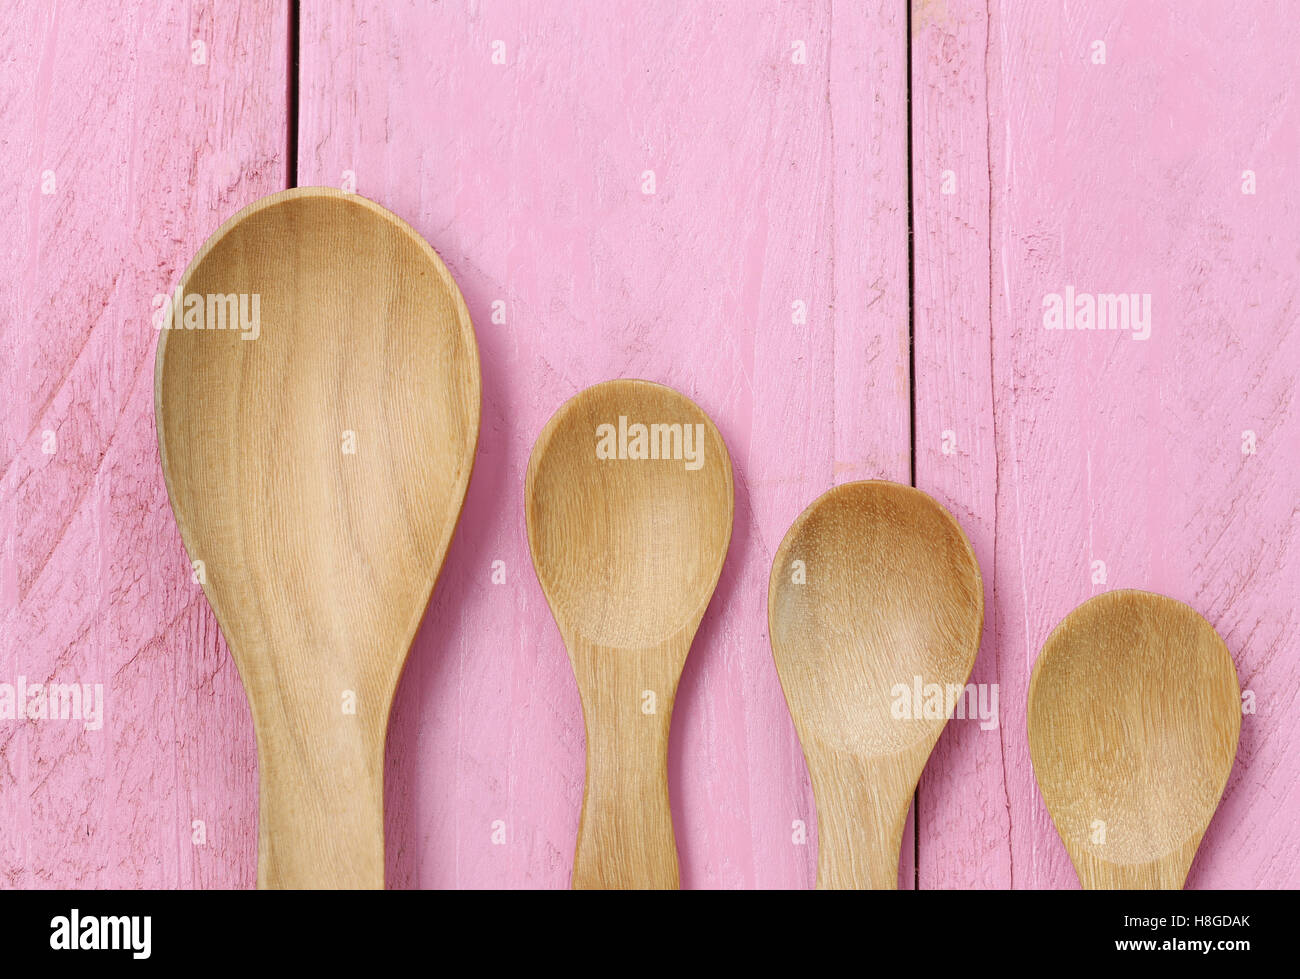 Il cucchiaio di legno sulla rosa dei pavimenti in legno,concetto di stoviglie e utensili di cottura. Foto Stock